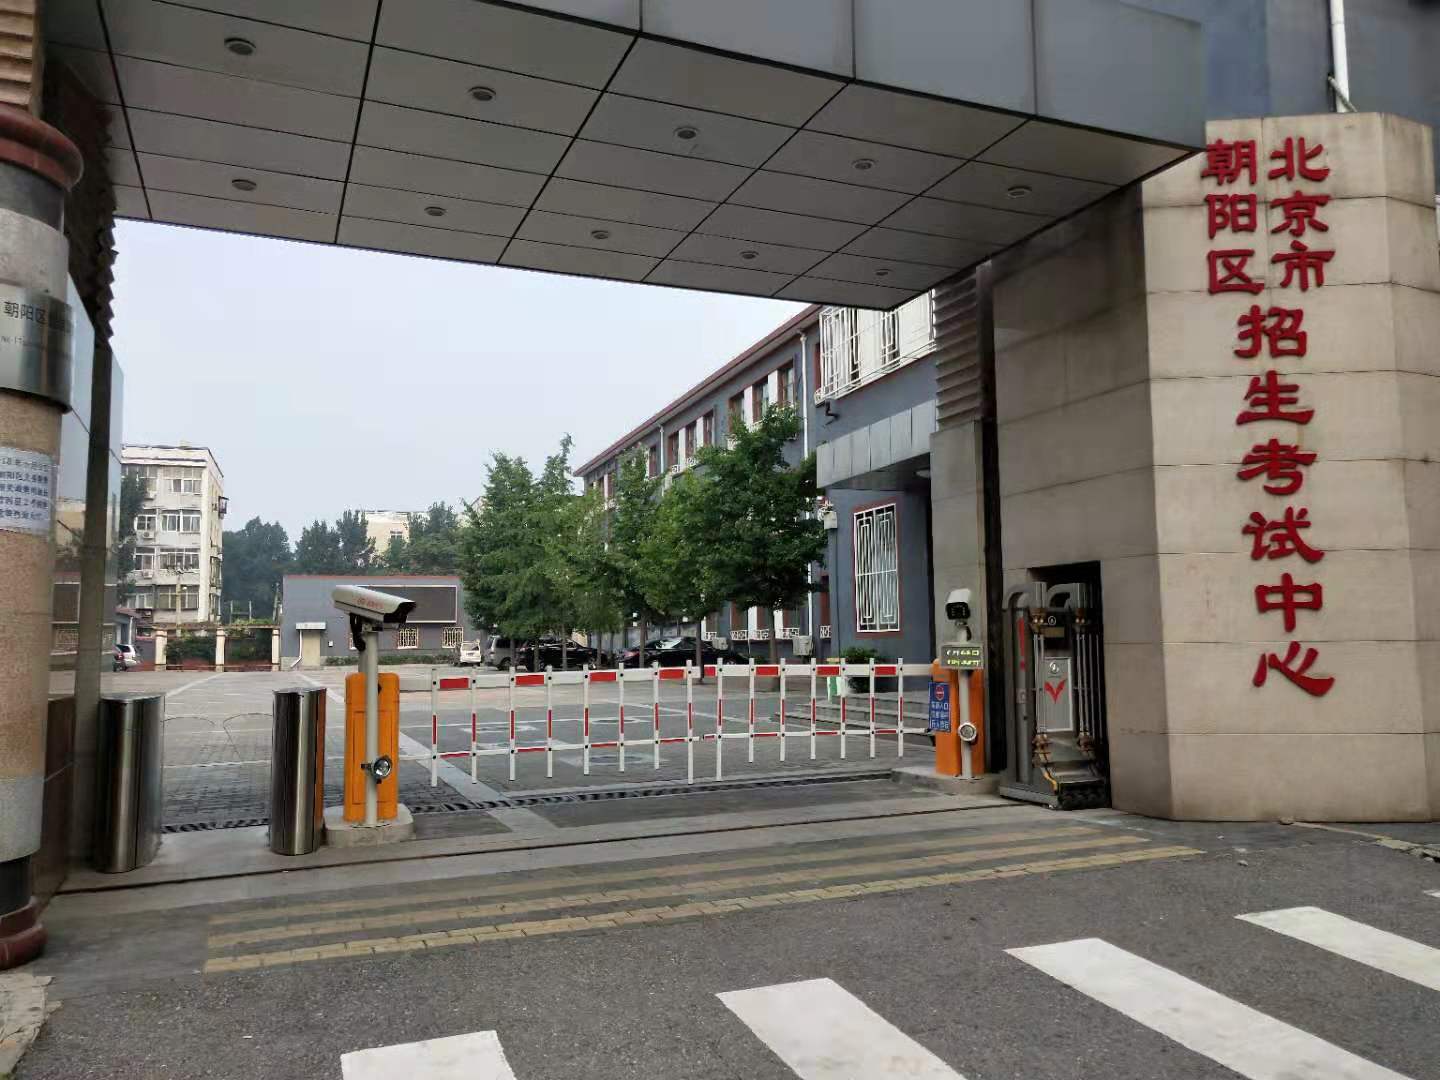 北京朝阳考试中心人脸+停车场管理系统施工